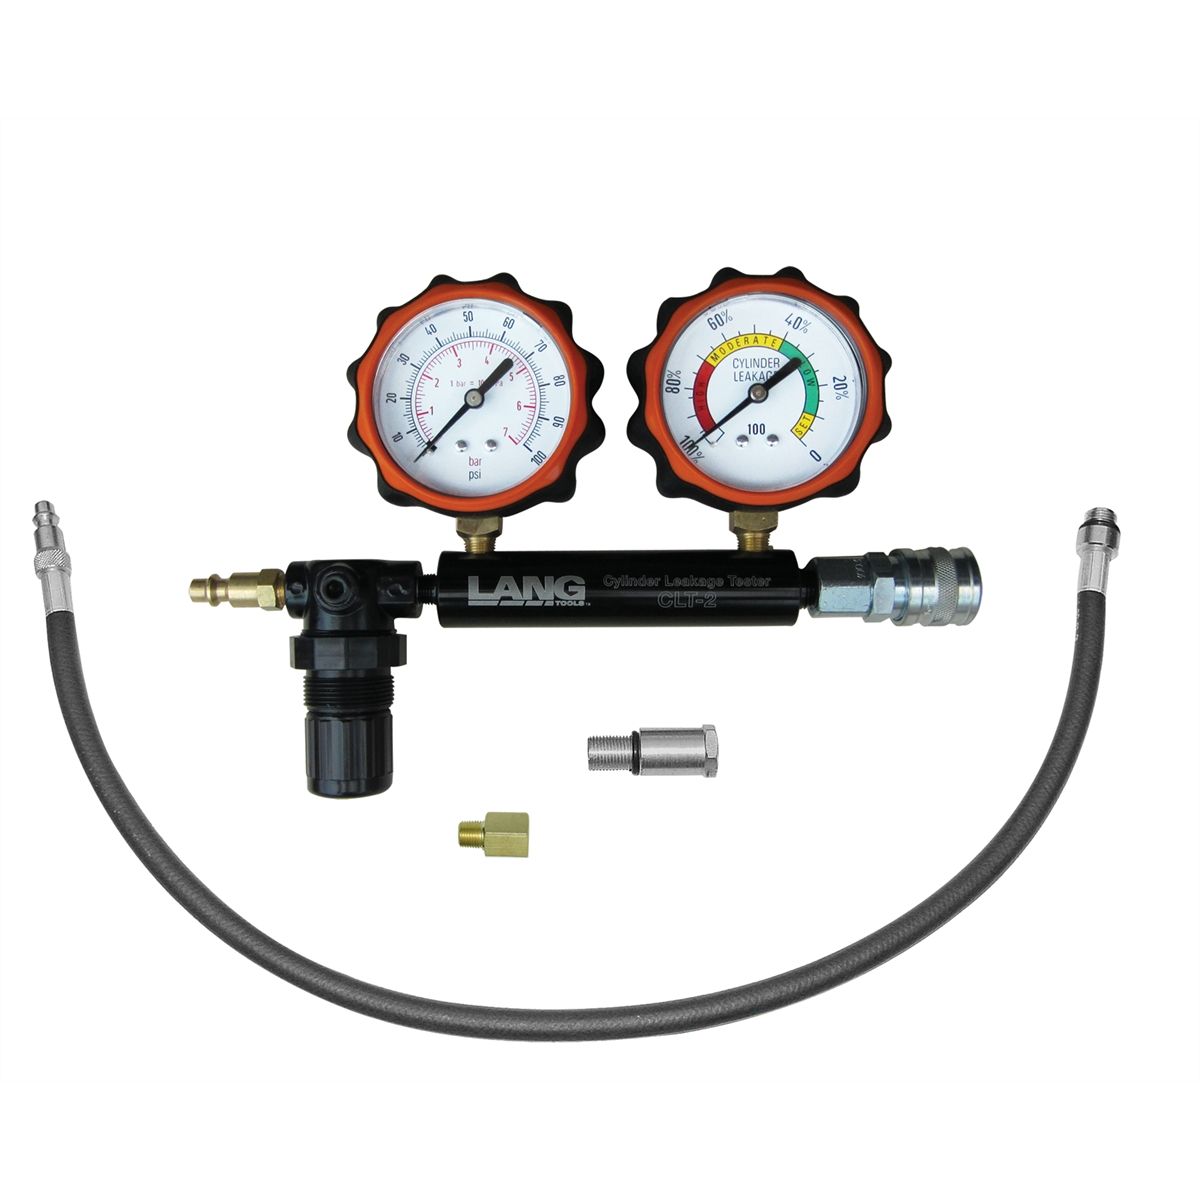 Cylinder Leak Detector & Engine Compression Tester Kit Leakage Test Set 